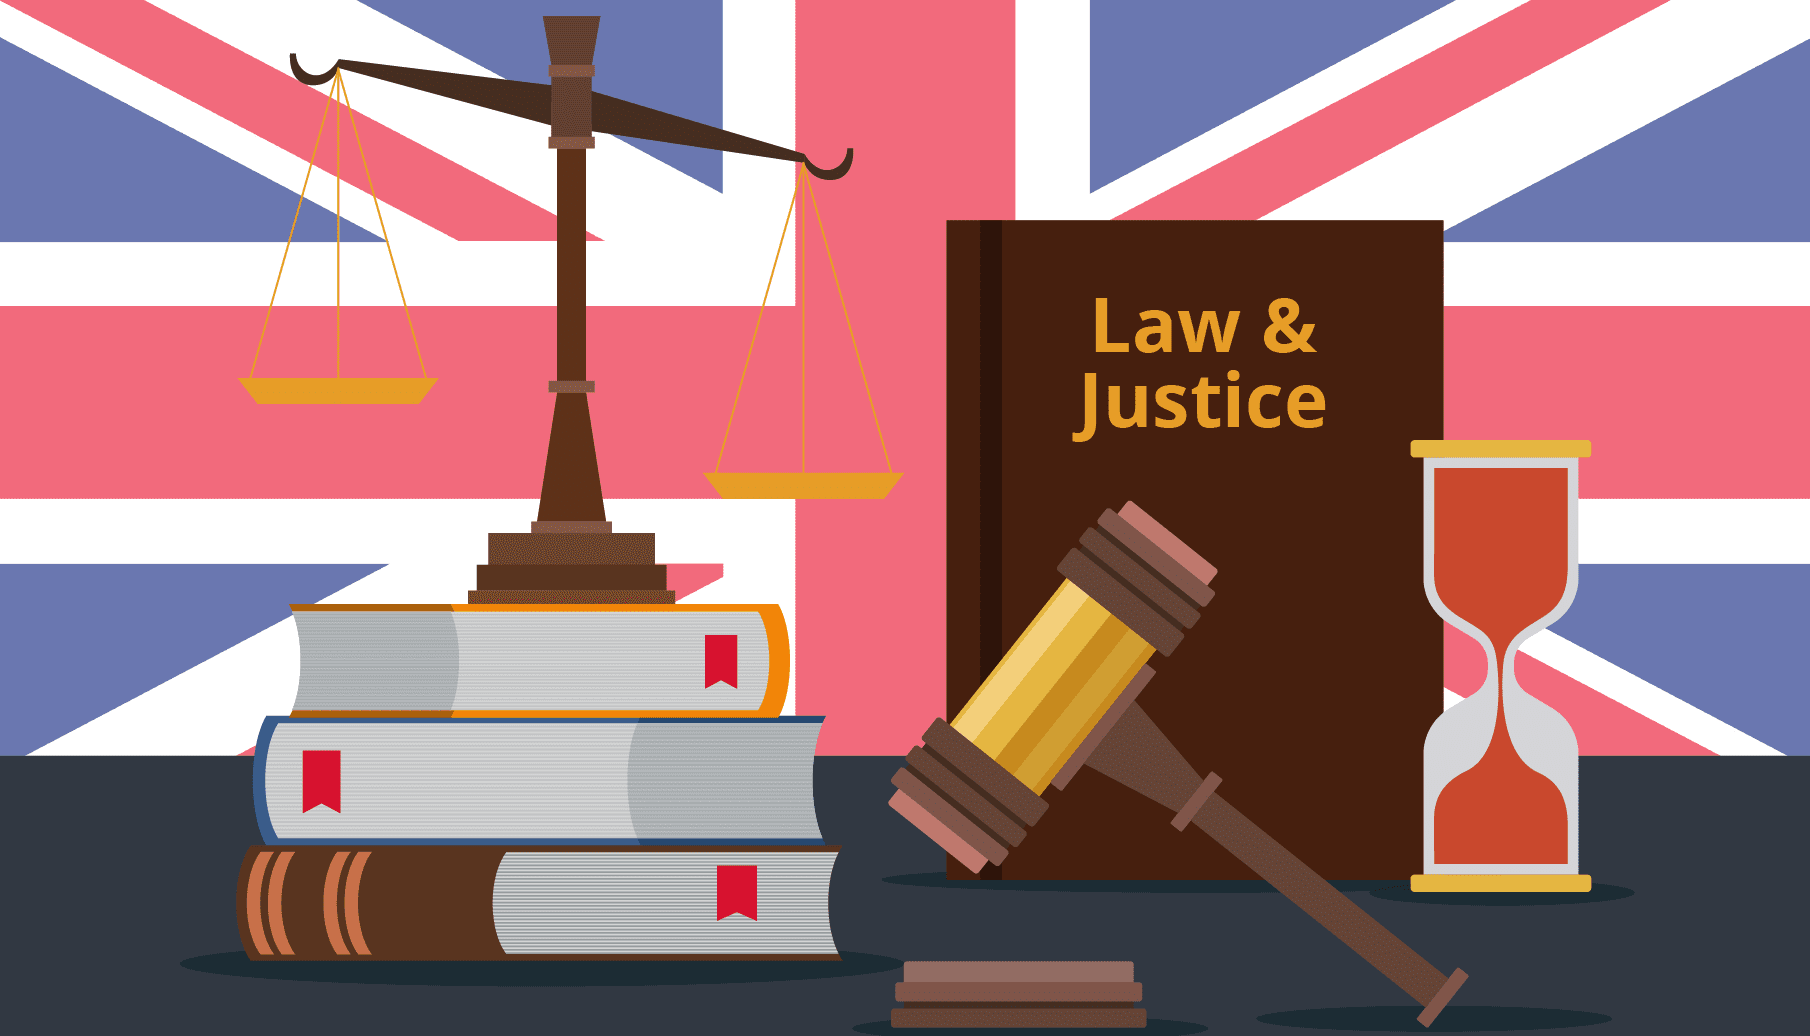 İngiltere'ye Eğitim İçin Gidildiğinde Yapılması Gereken Yasal İşlemler